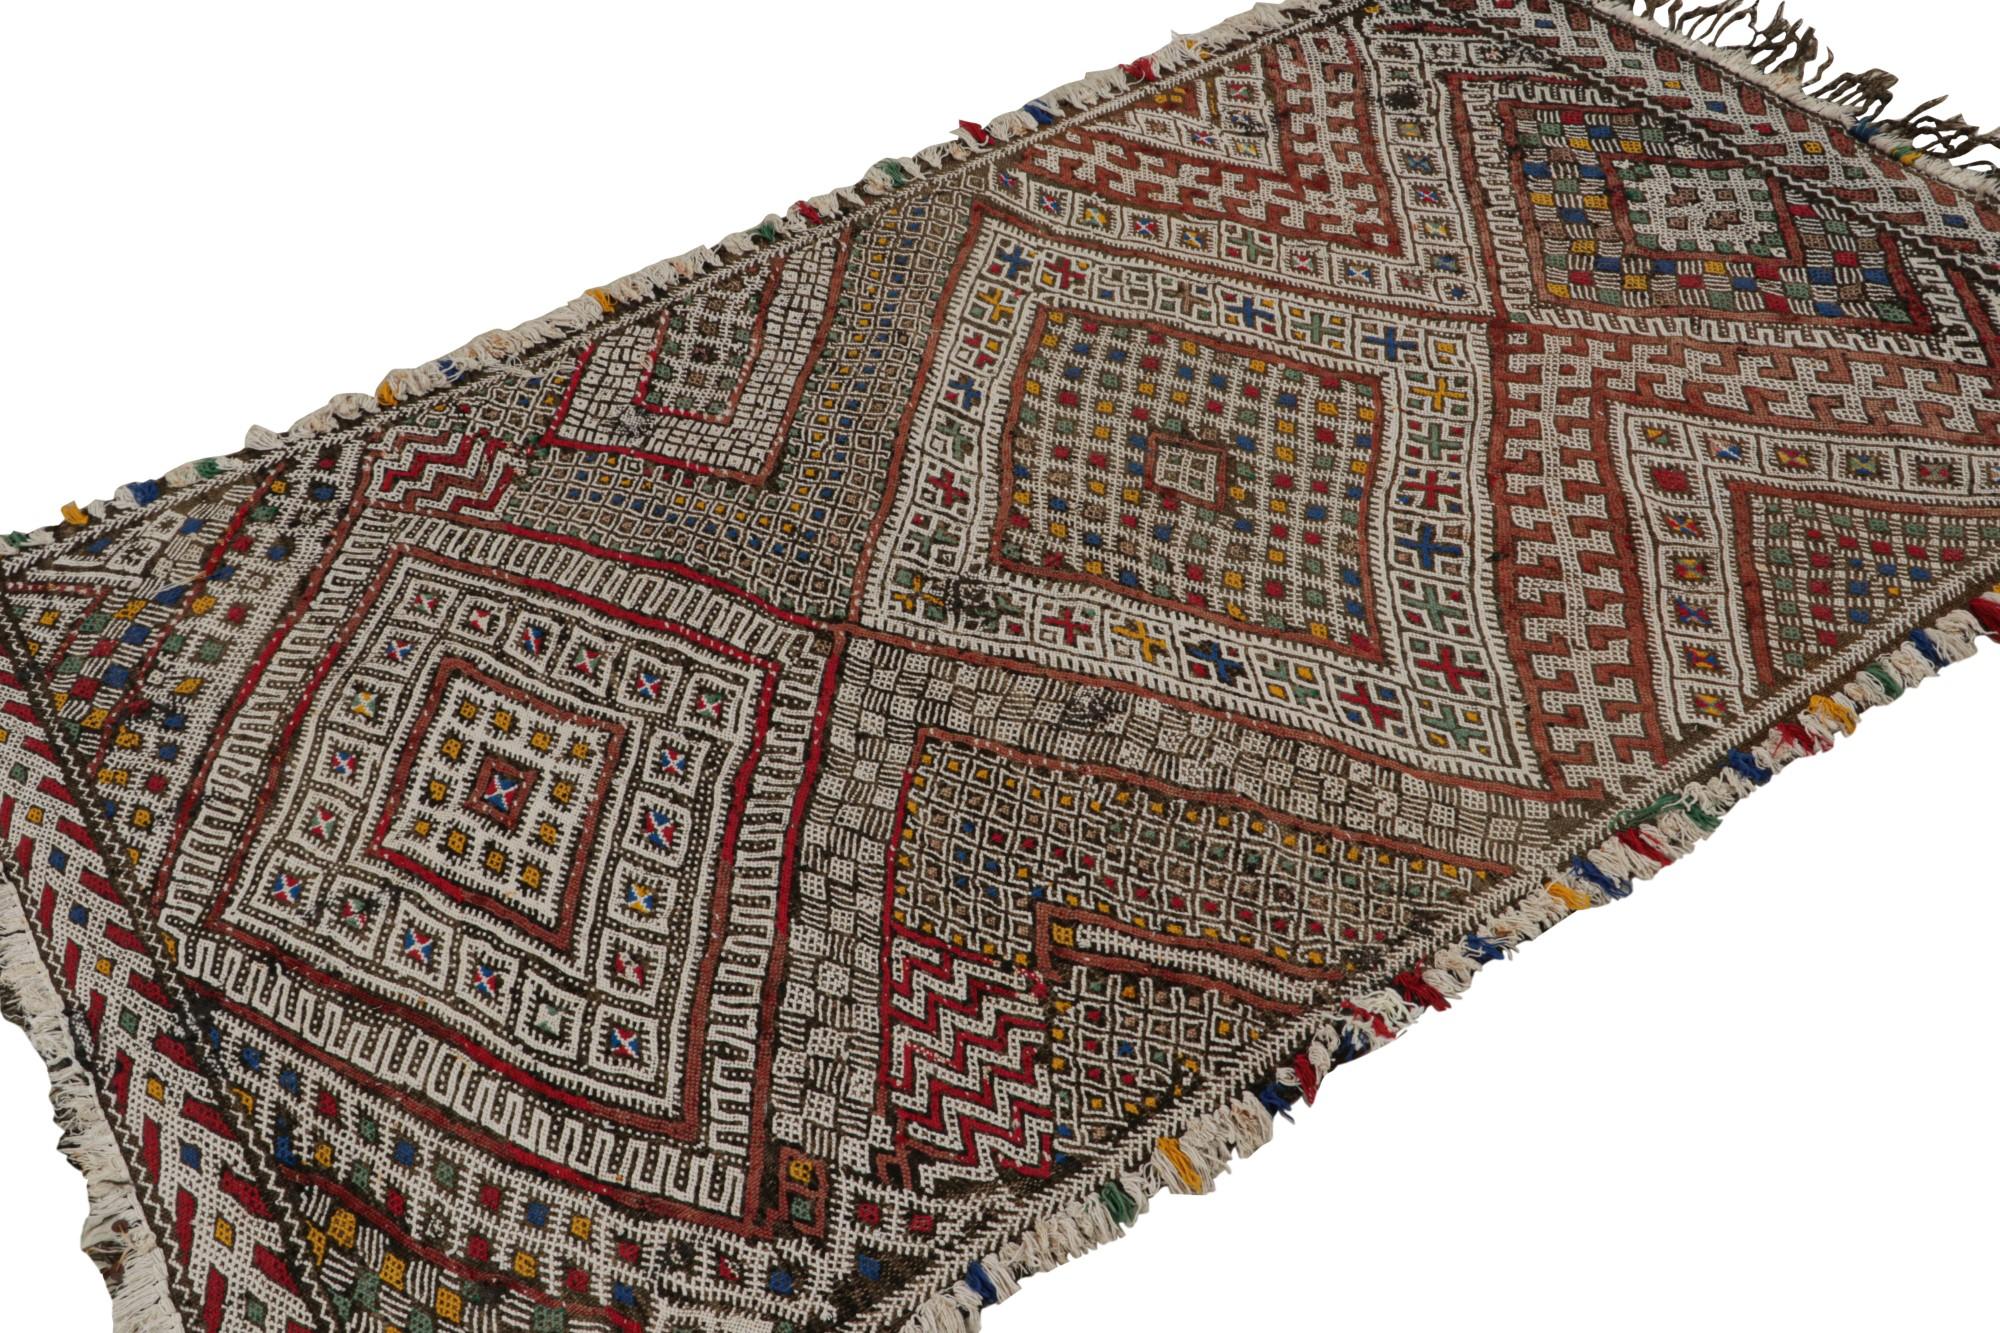 Noué à la main en laine, ce 4x6 vintage Zayane Moroccan kilim rug est censé provenir de la même tribu dans la chaîne de montagnes du Moyen Atlas au Maroc.  

Sur le Design : 

Les admirateurs de l'artisanat apprécieront ce tapis vintage comme une